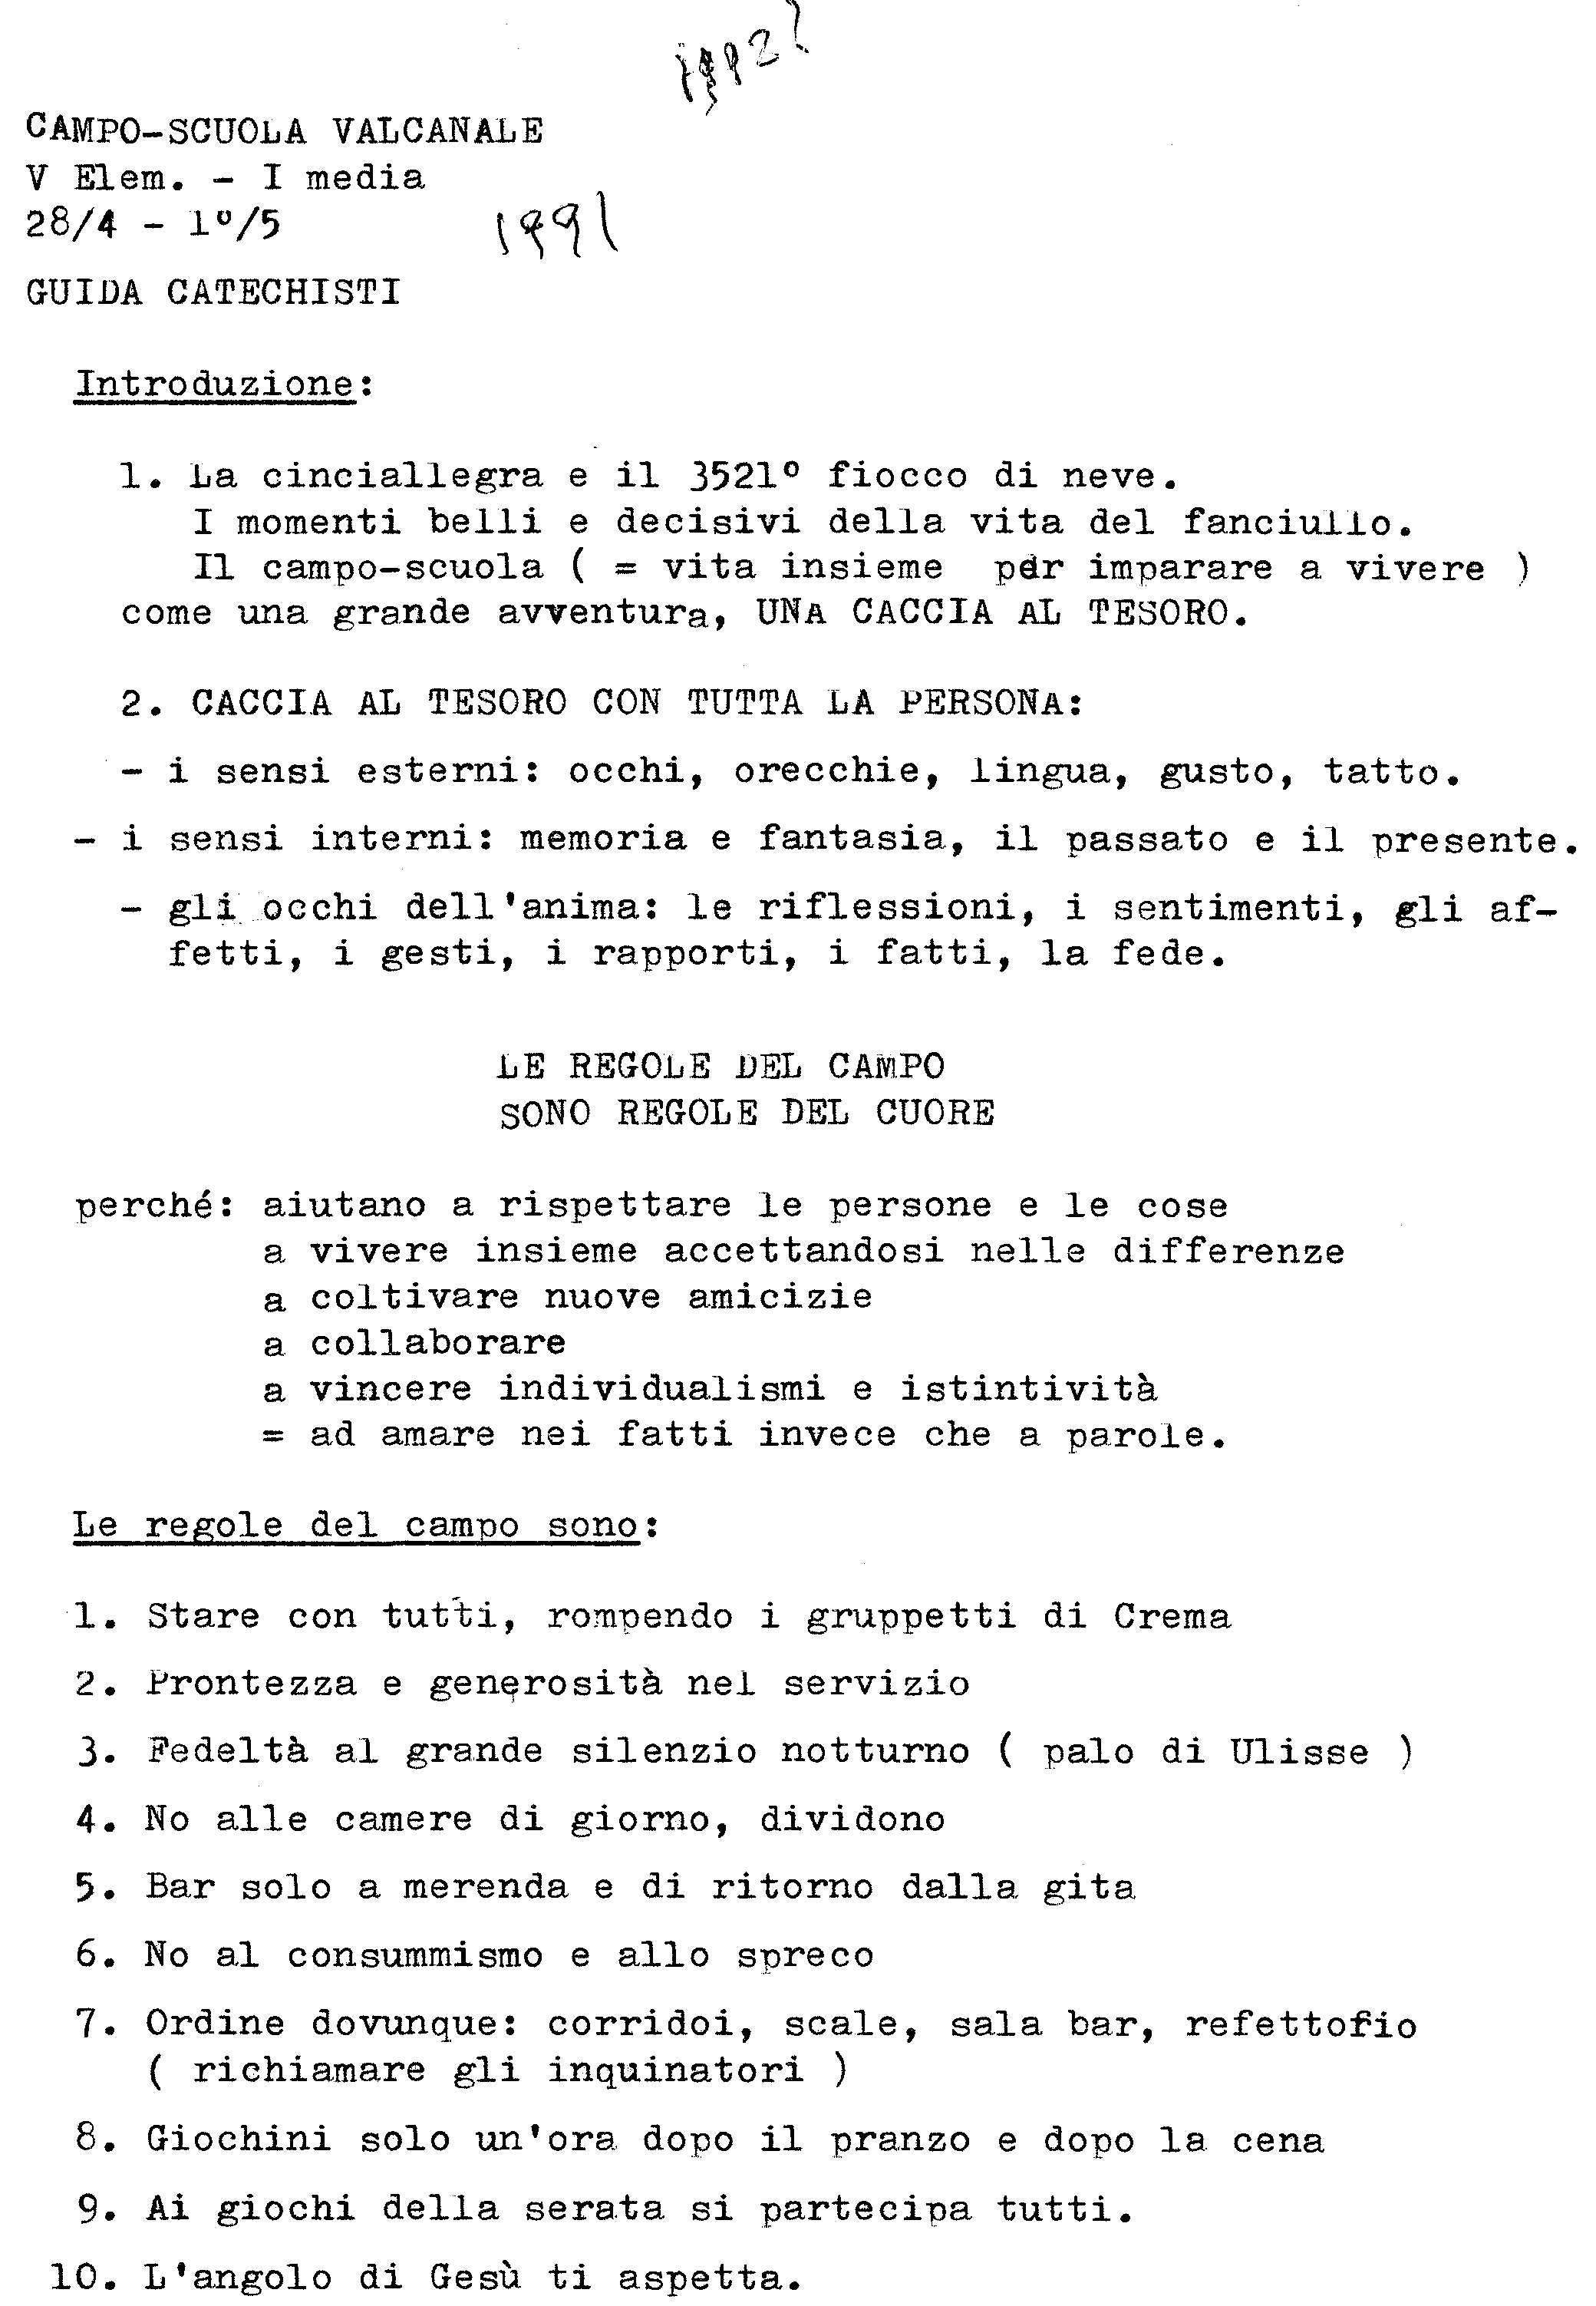 Valcanale_91_V_elem_I_media_Guida_catechisti.pdf